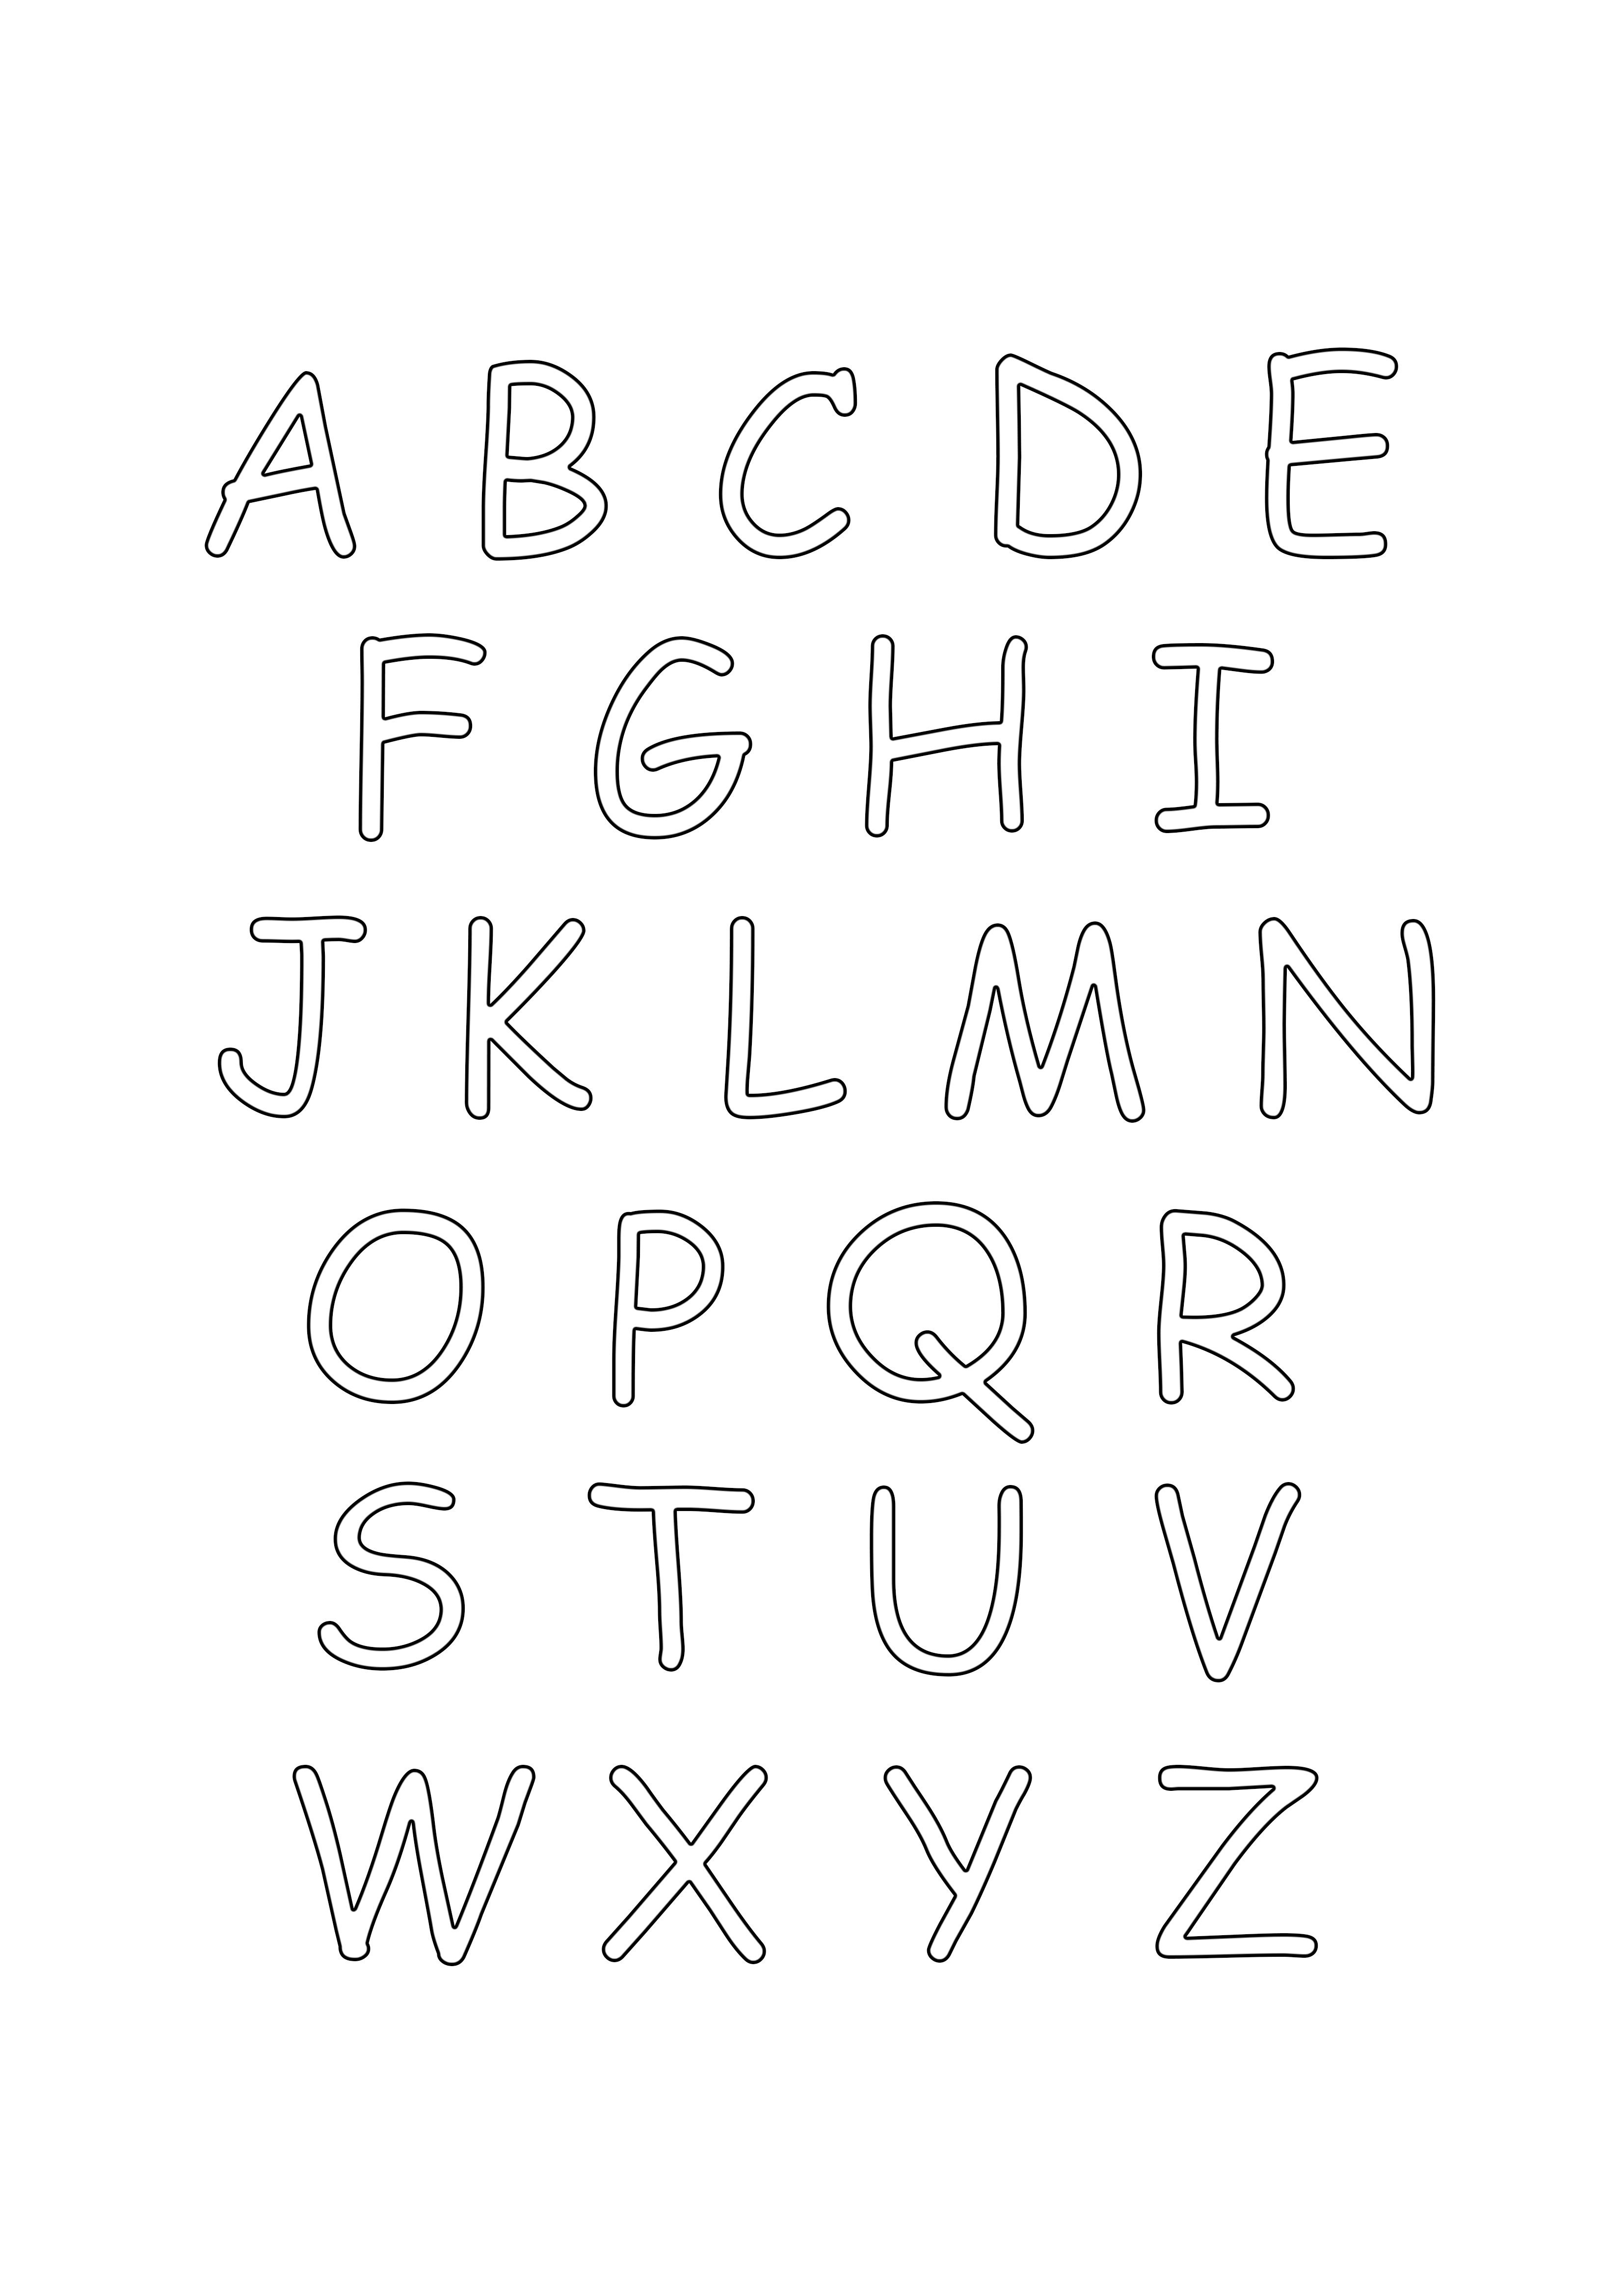 büyük harf alfabe boyama sayfası ücretsiz yazdırma